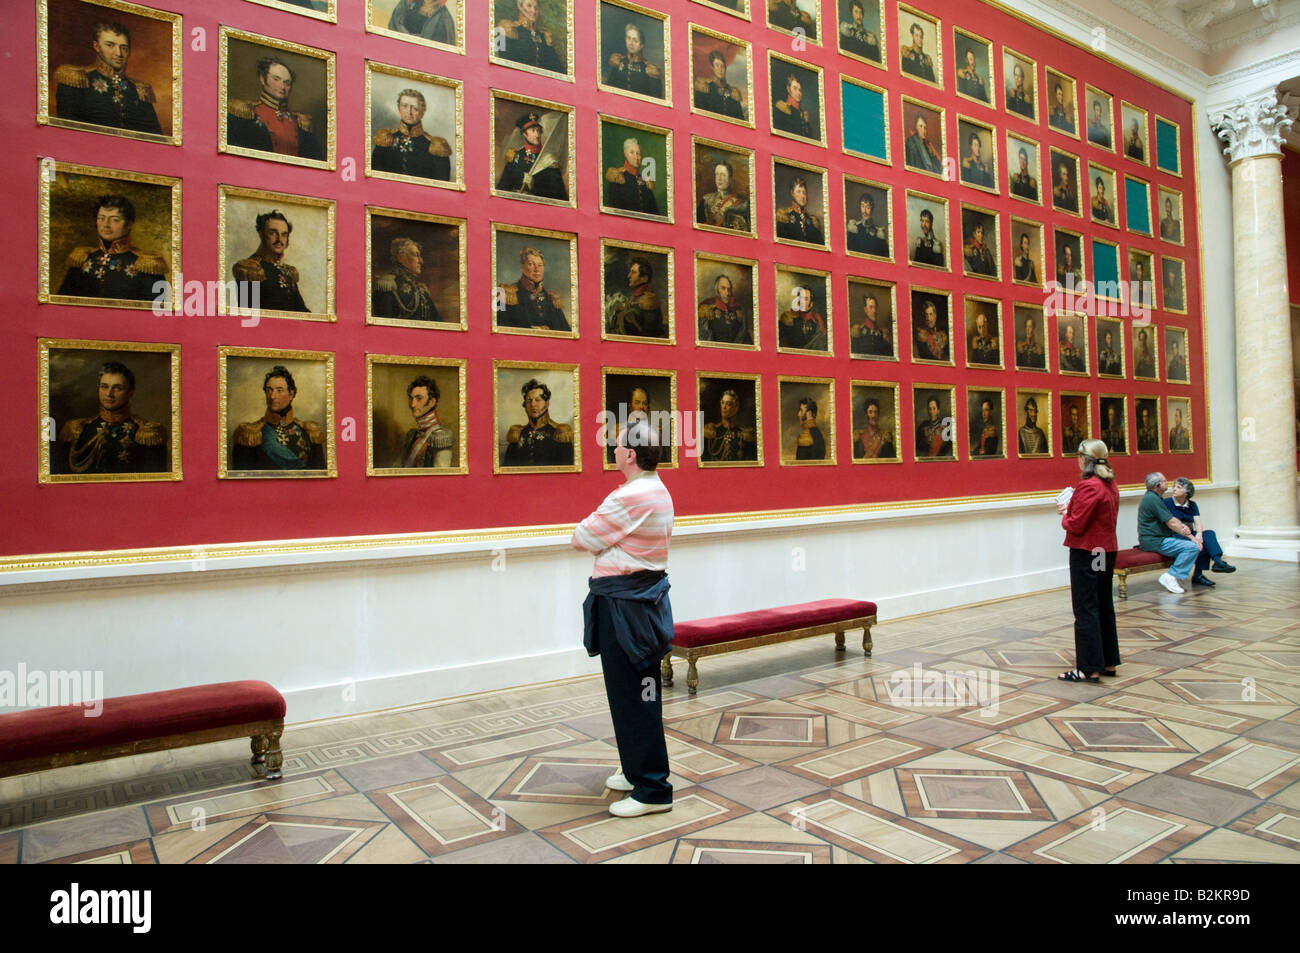 Filas de retratos militares en el Museo Estatal del Hermitage, San Petersburgo, Rusia Foto de stock